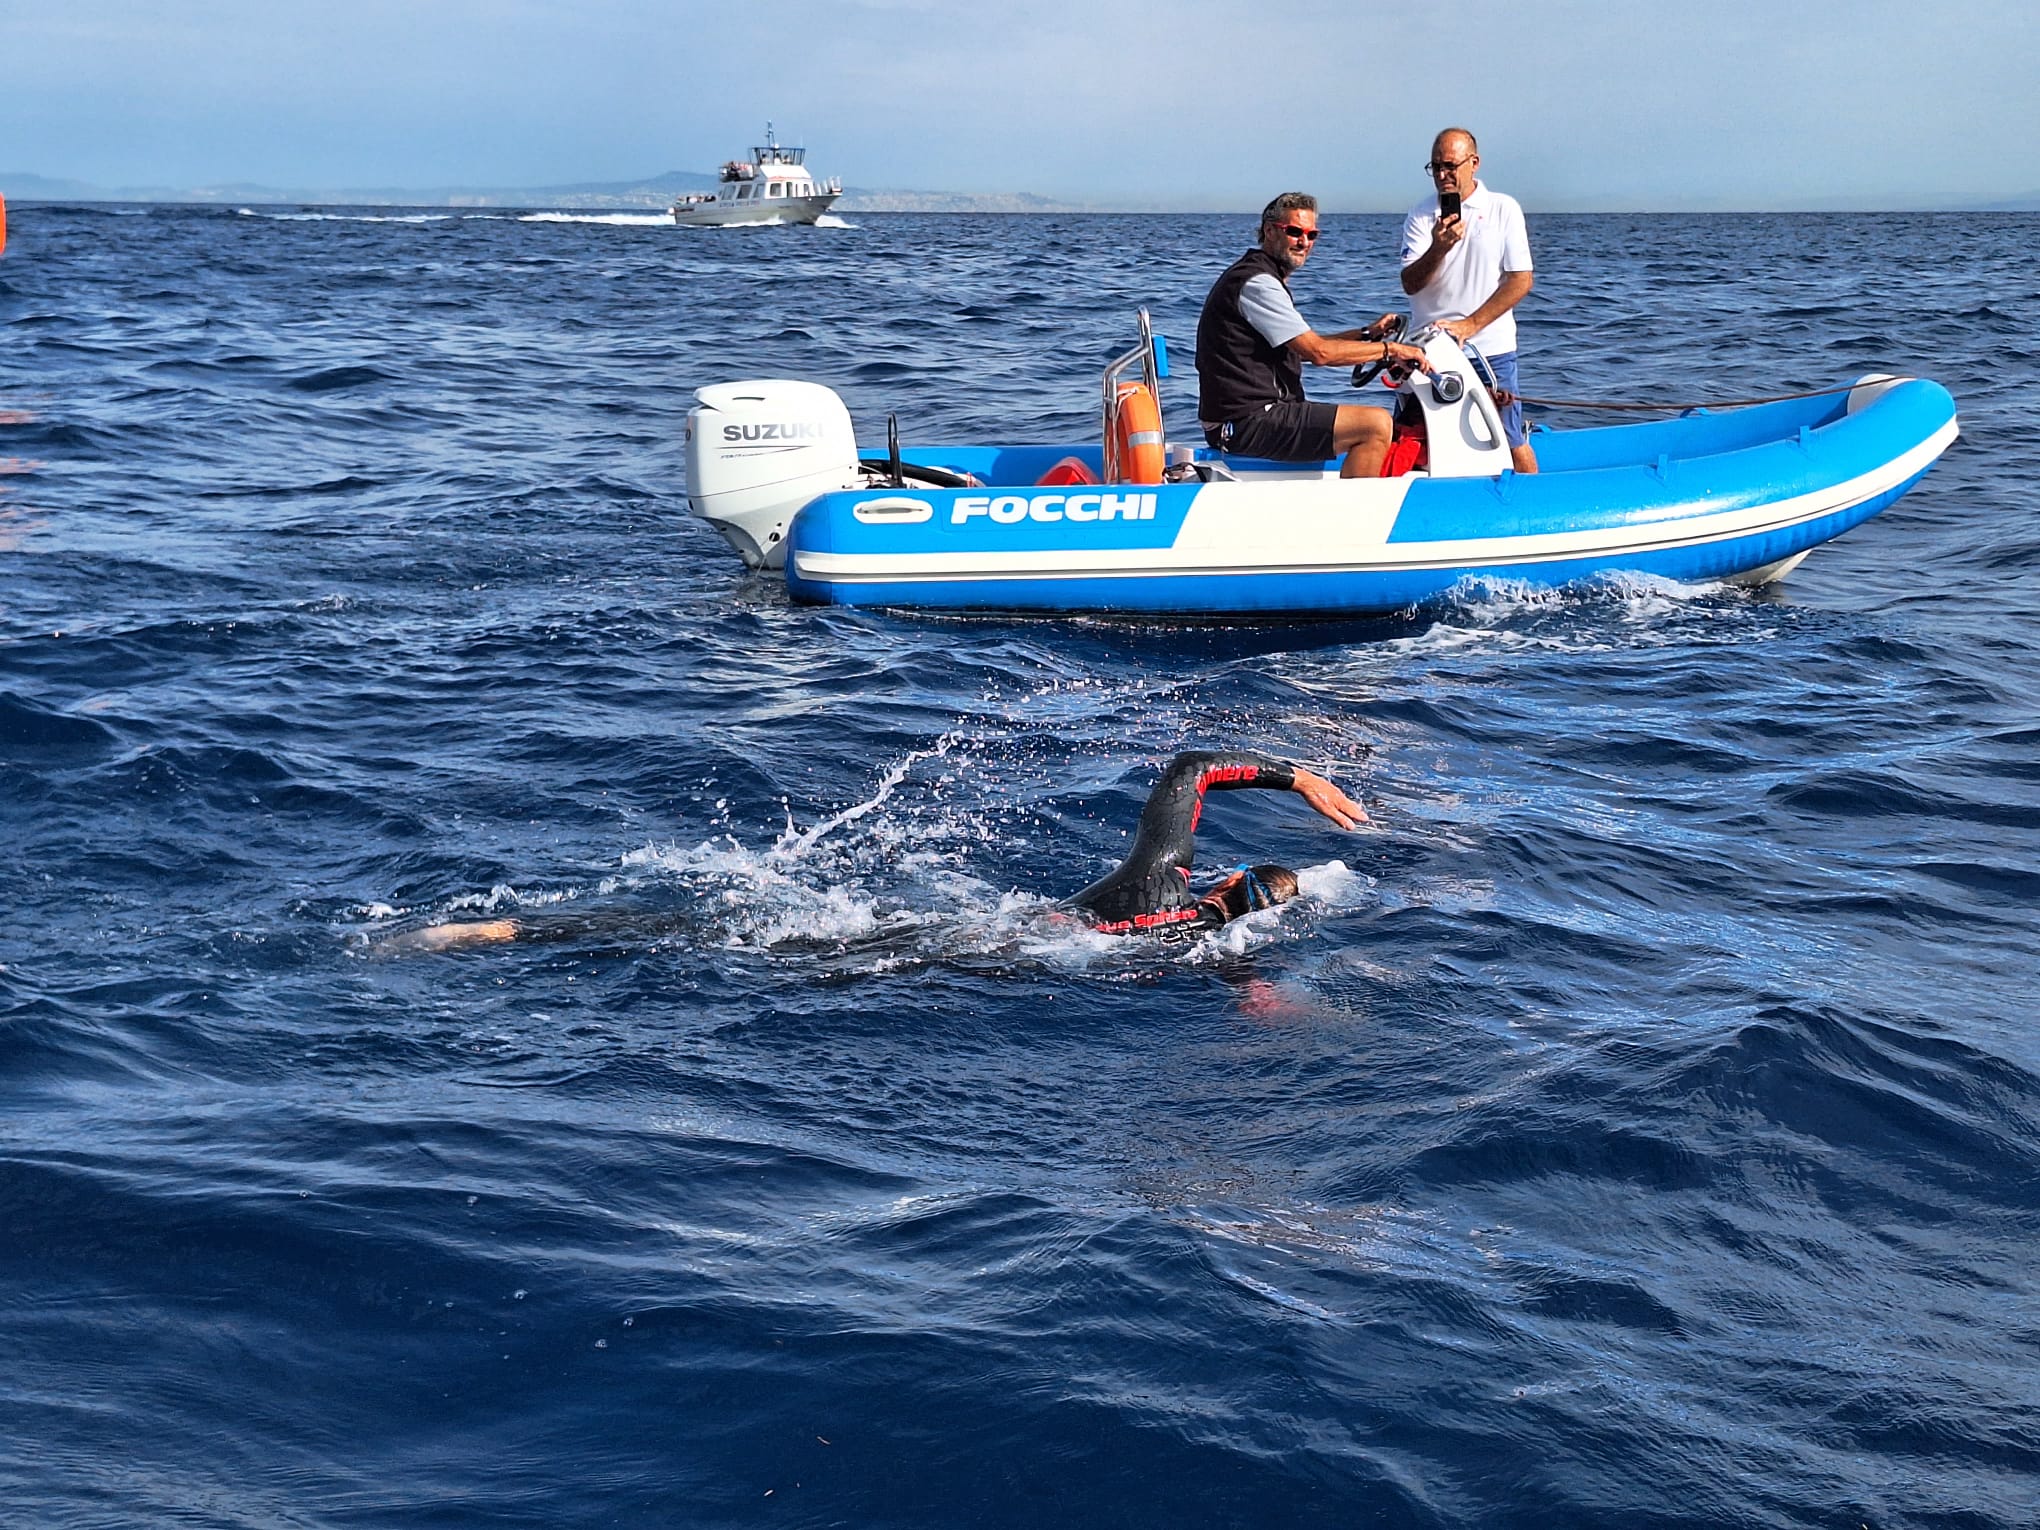 Giro dell’isola di Capri a nuoto con una sola gamba: la sfida di Salvatore per i diritti delle persone con disabilità (foto e video)